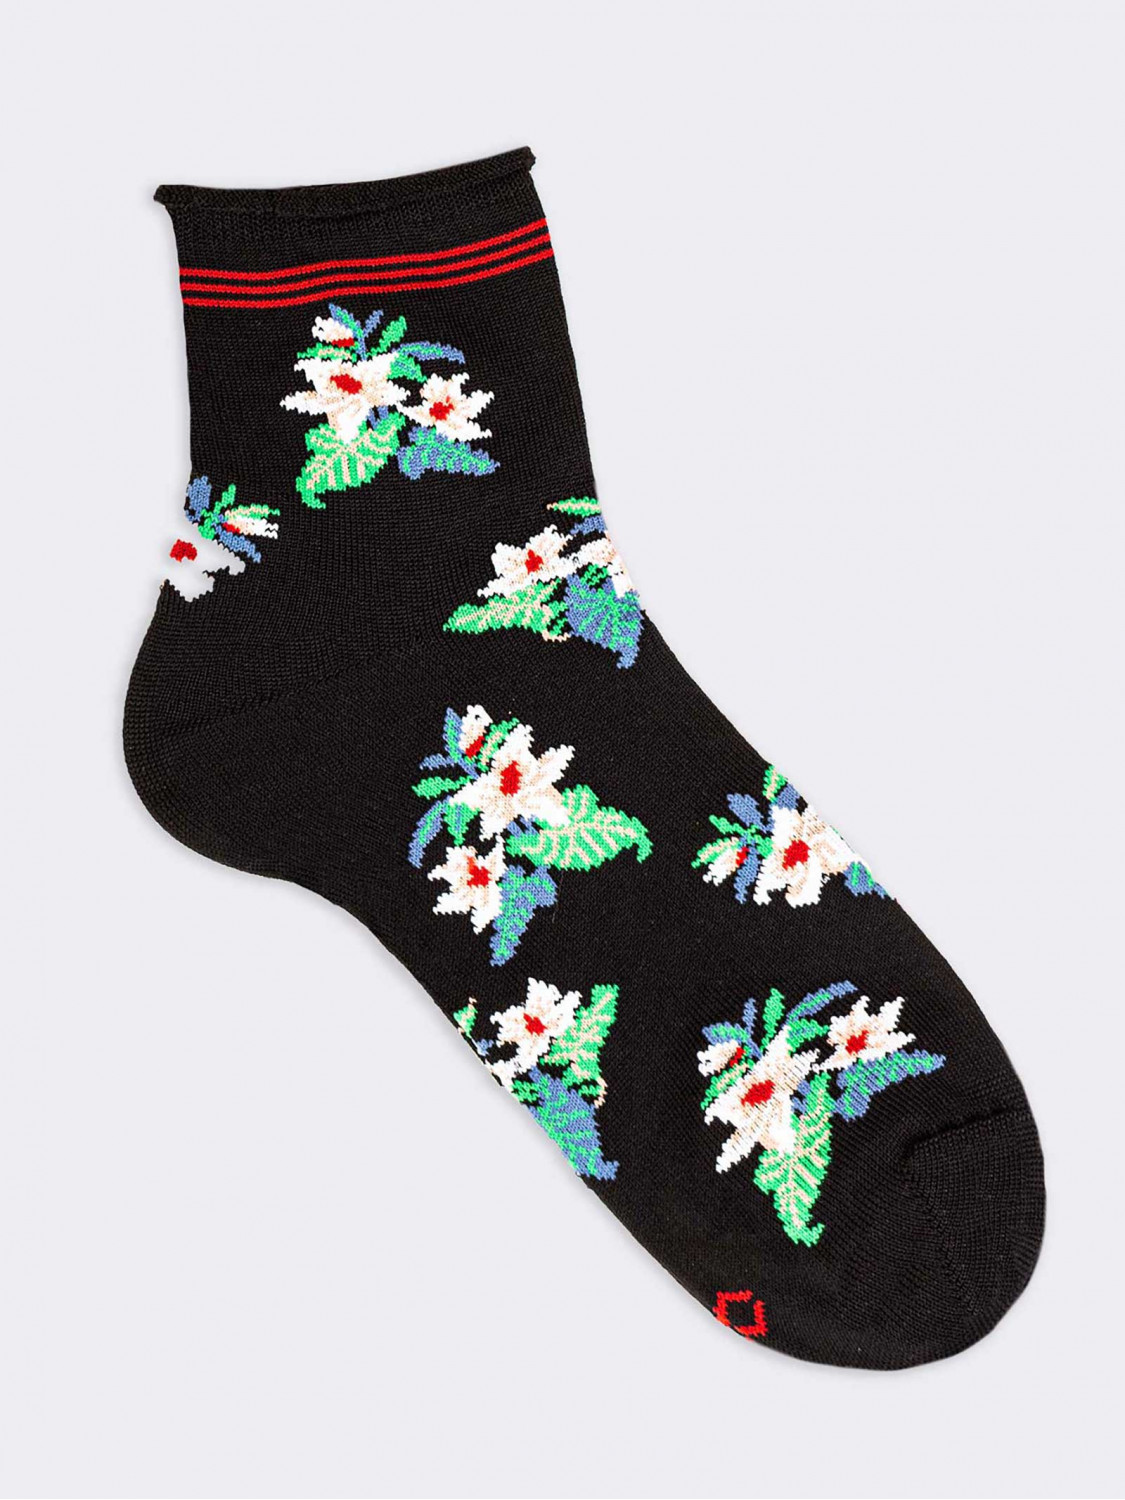 Flowers pattern Woman's Crew Socks